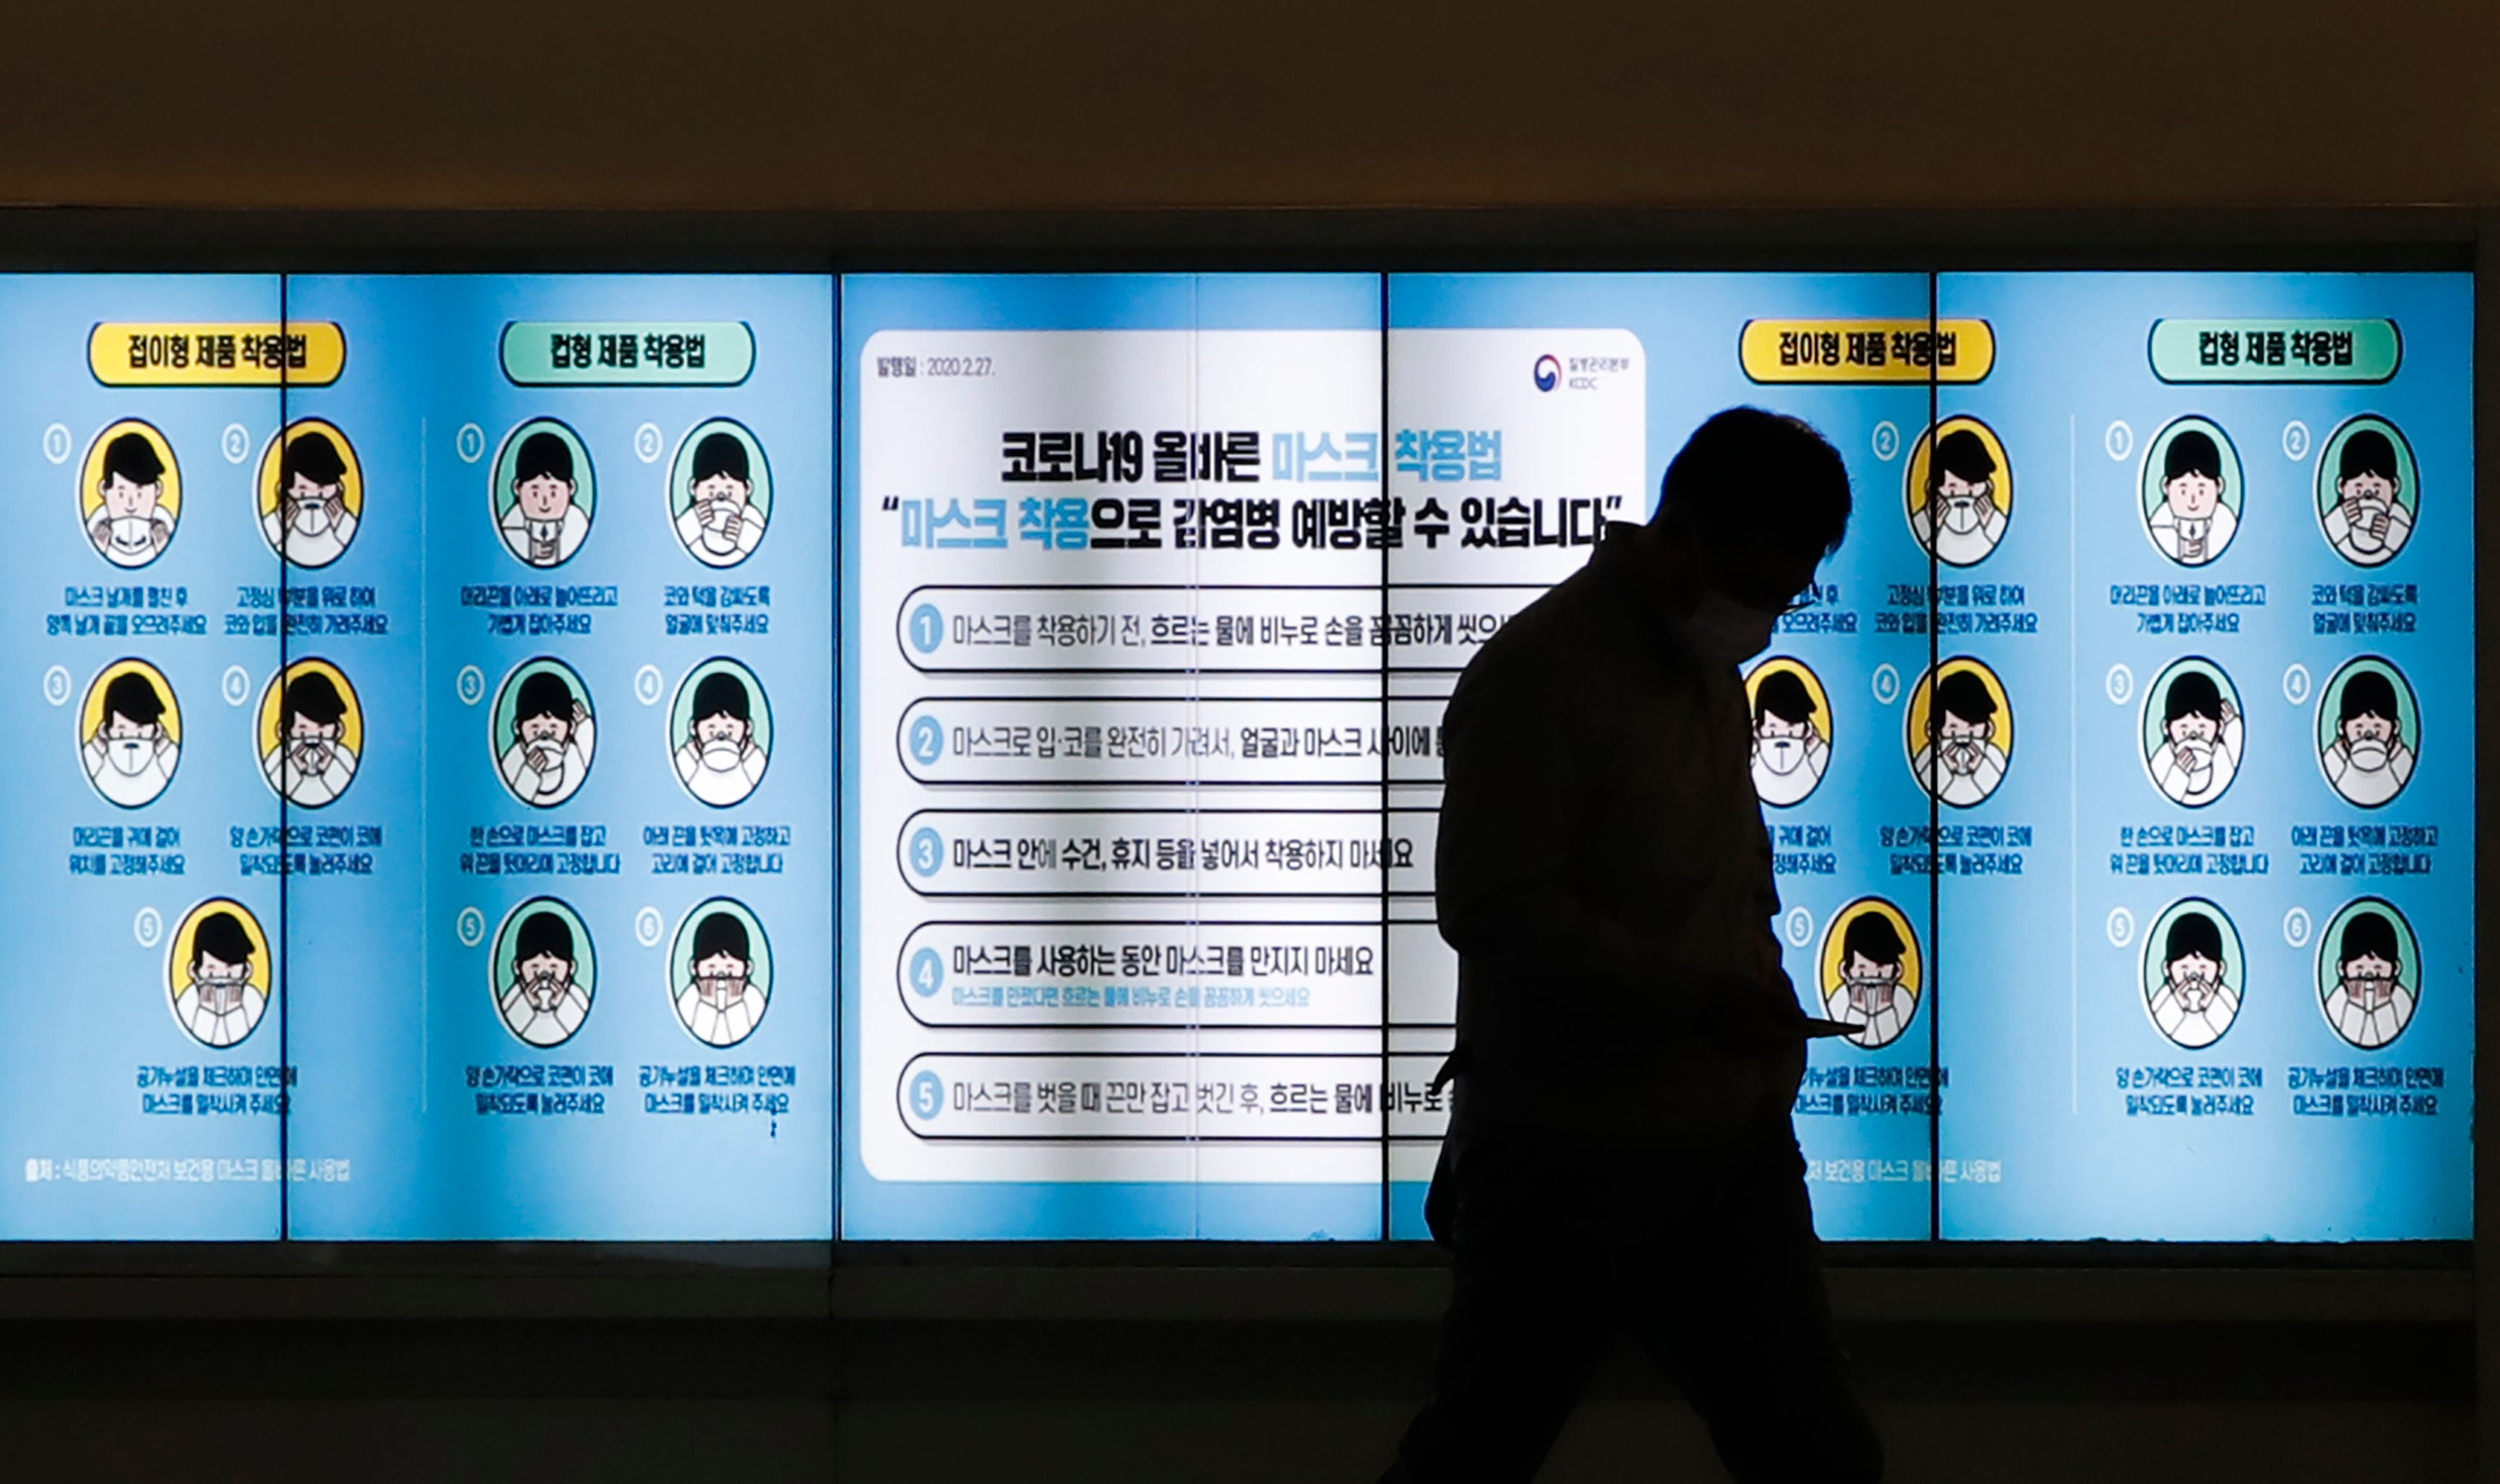 Un hombre con mascarilla pasa por delante de una pantalla que muestra las medidas de precaución contra el coronavirus, en Seúl, Corea del Sur, el 20 de noviembre de 2020. El letrero dice "Como llevar mascarilla".